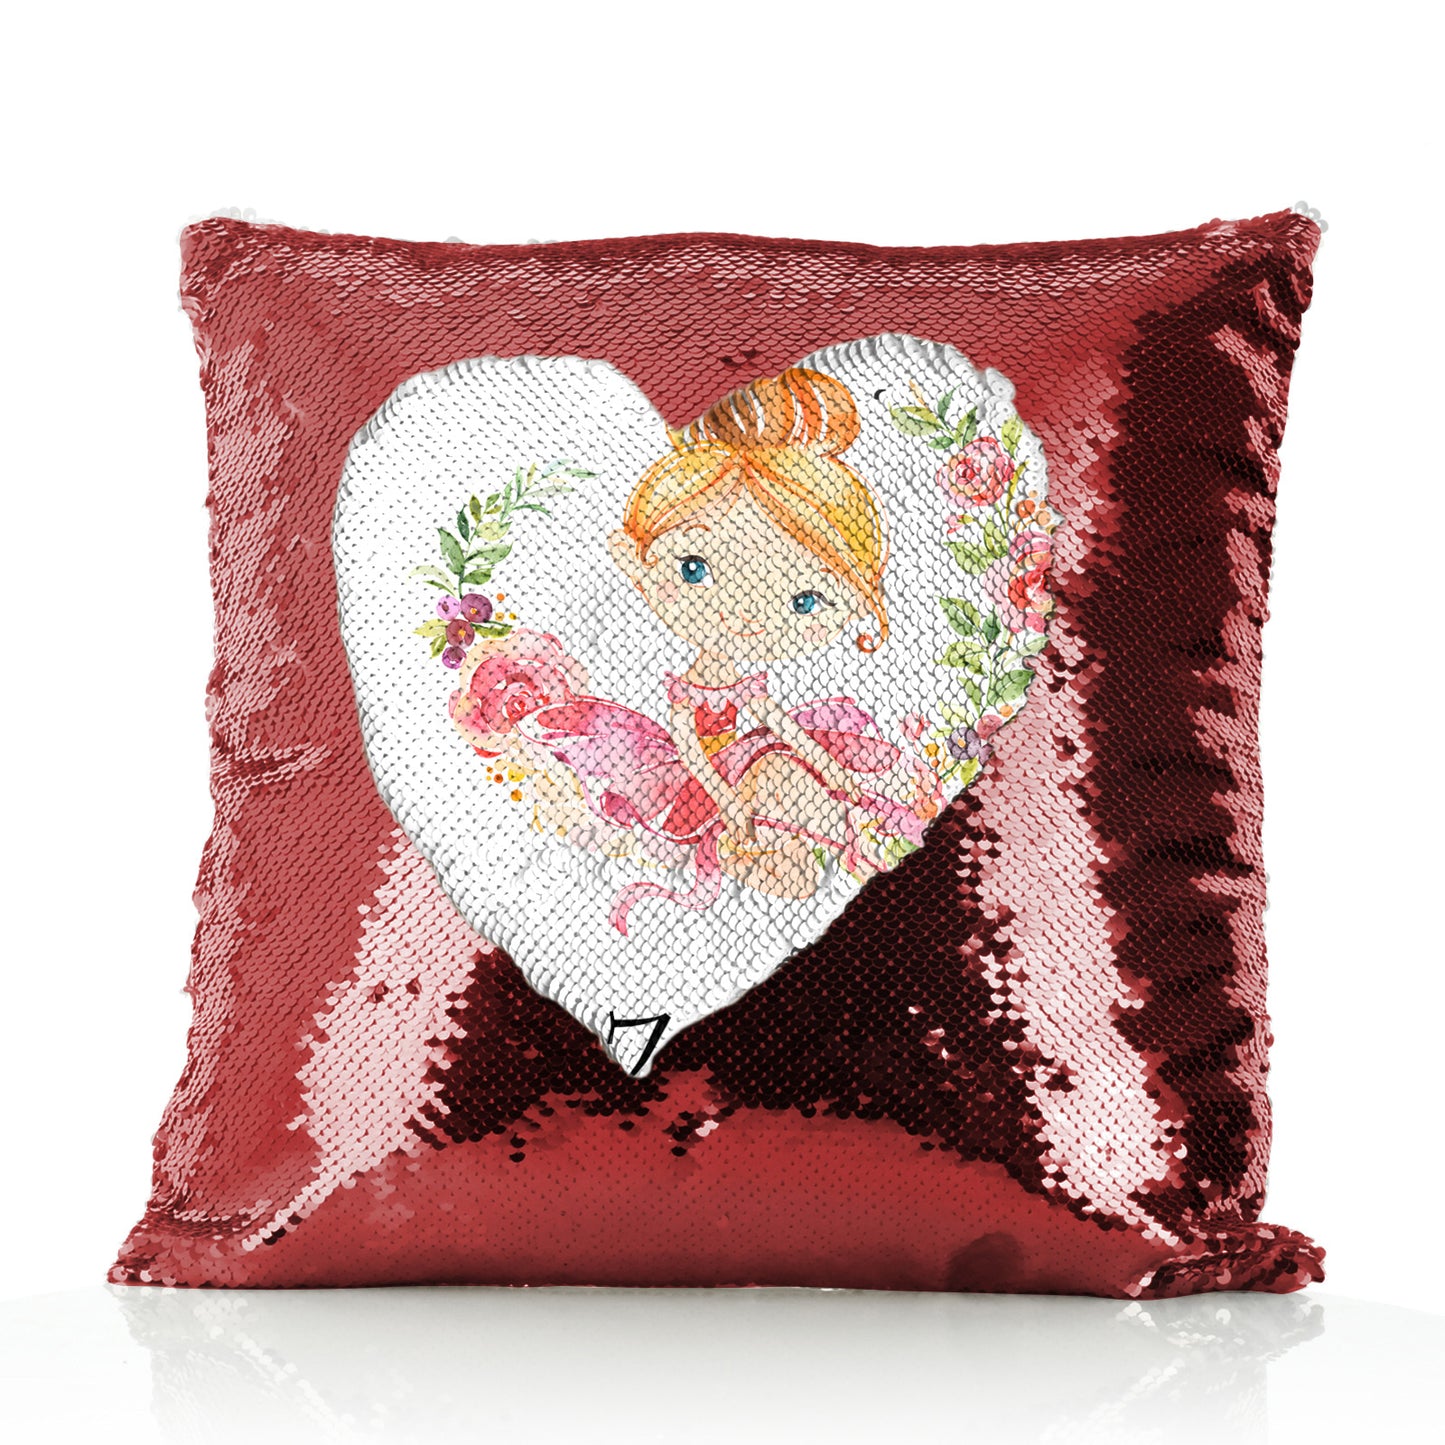 Personalisiertes Paillettenkissen mit niedlichem Text und Blumenkranz, Ballerina mit roten Haaren